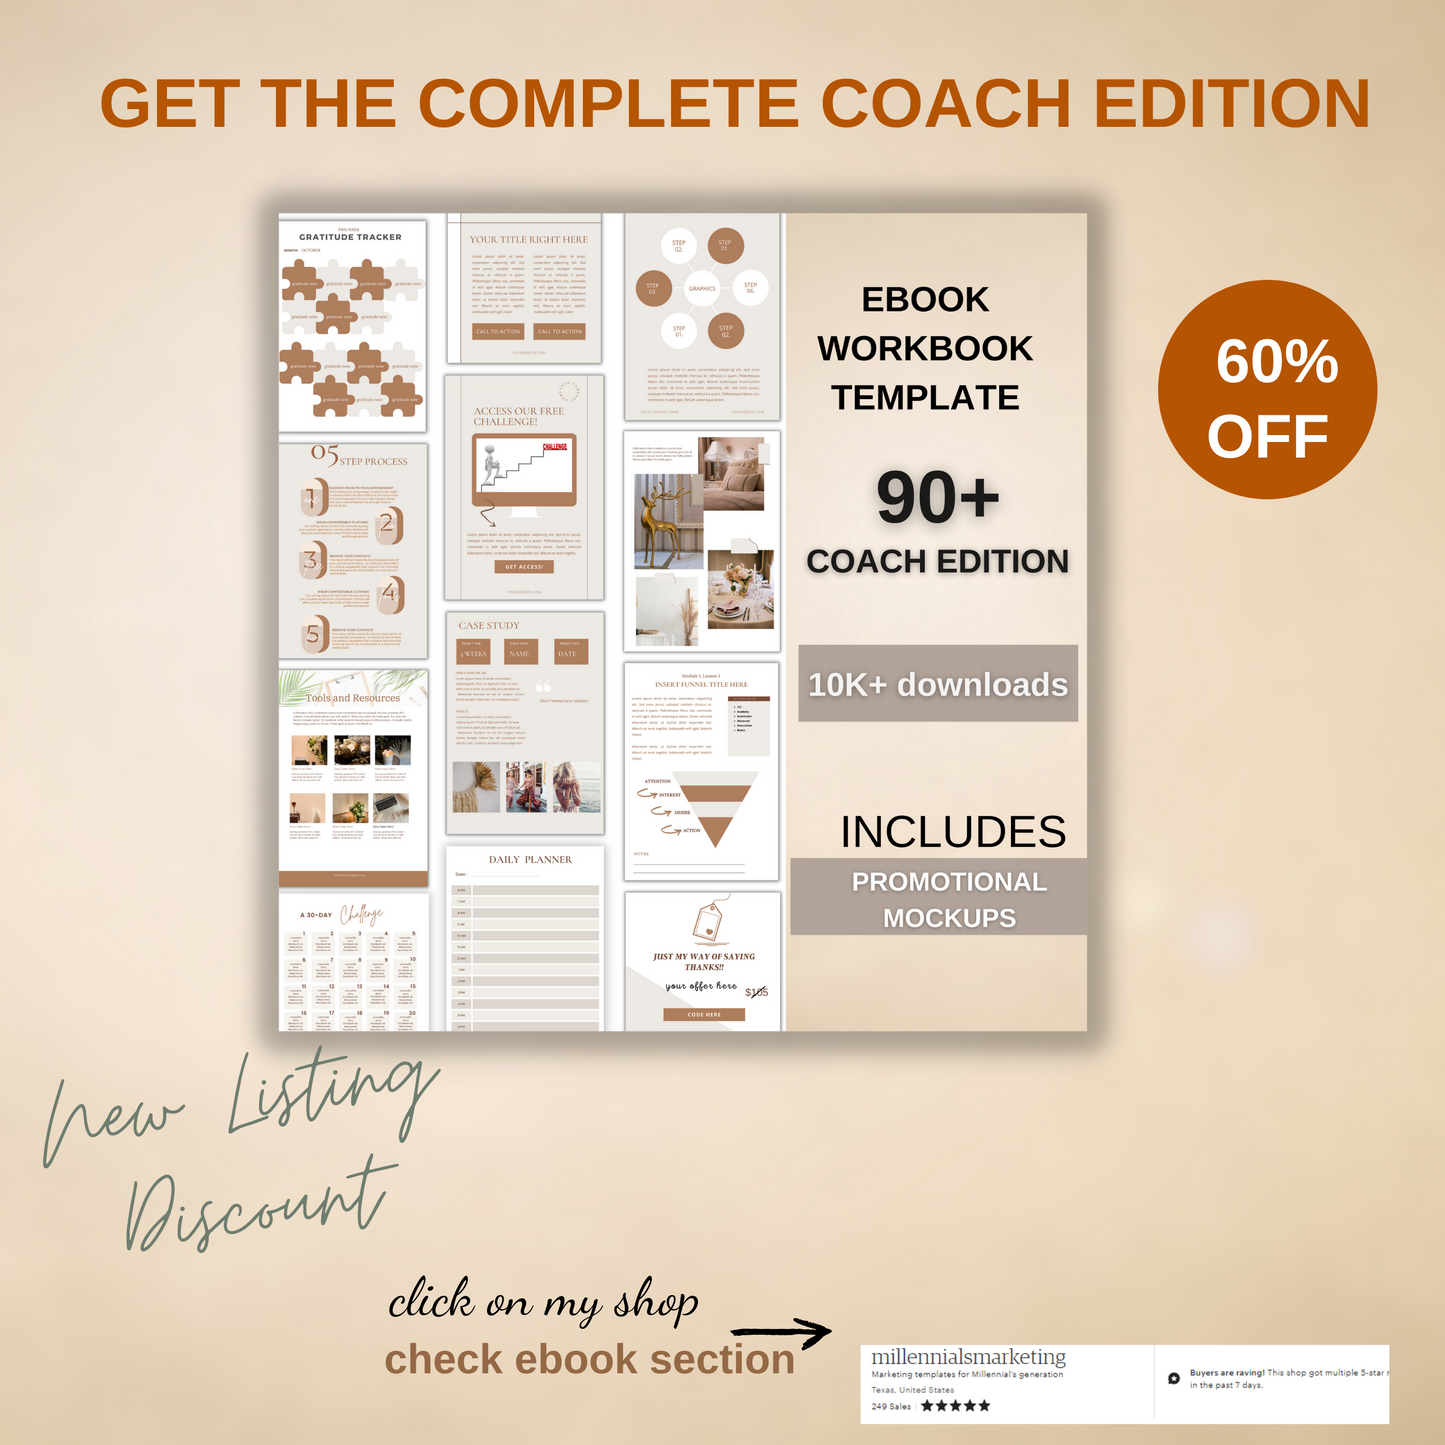 90+ Coach Edition Ebook/Workbook Template Canva,